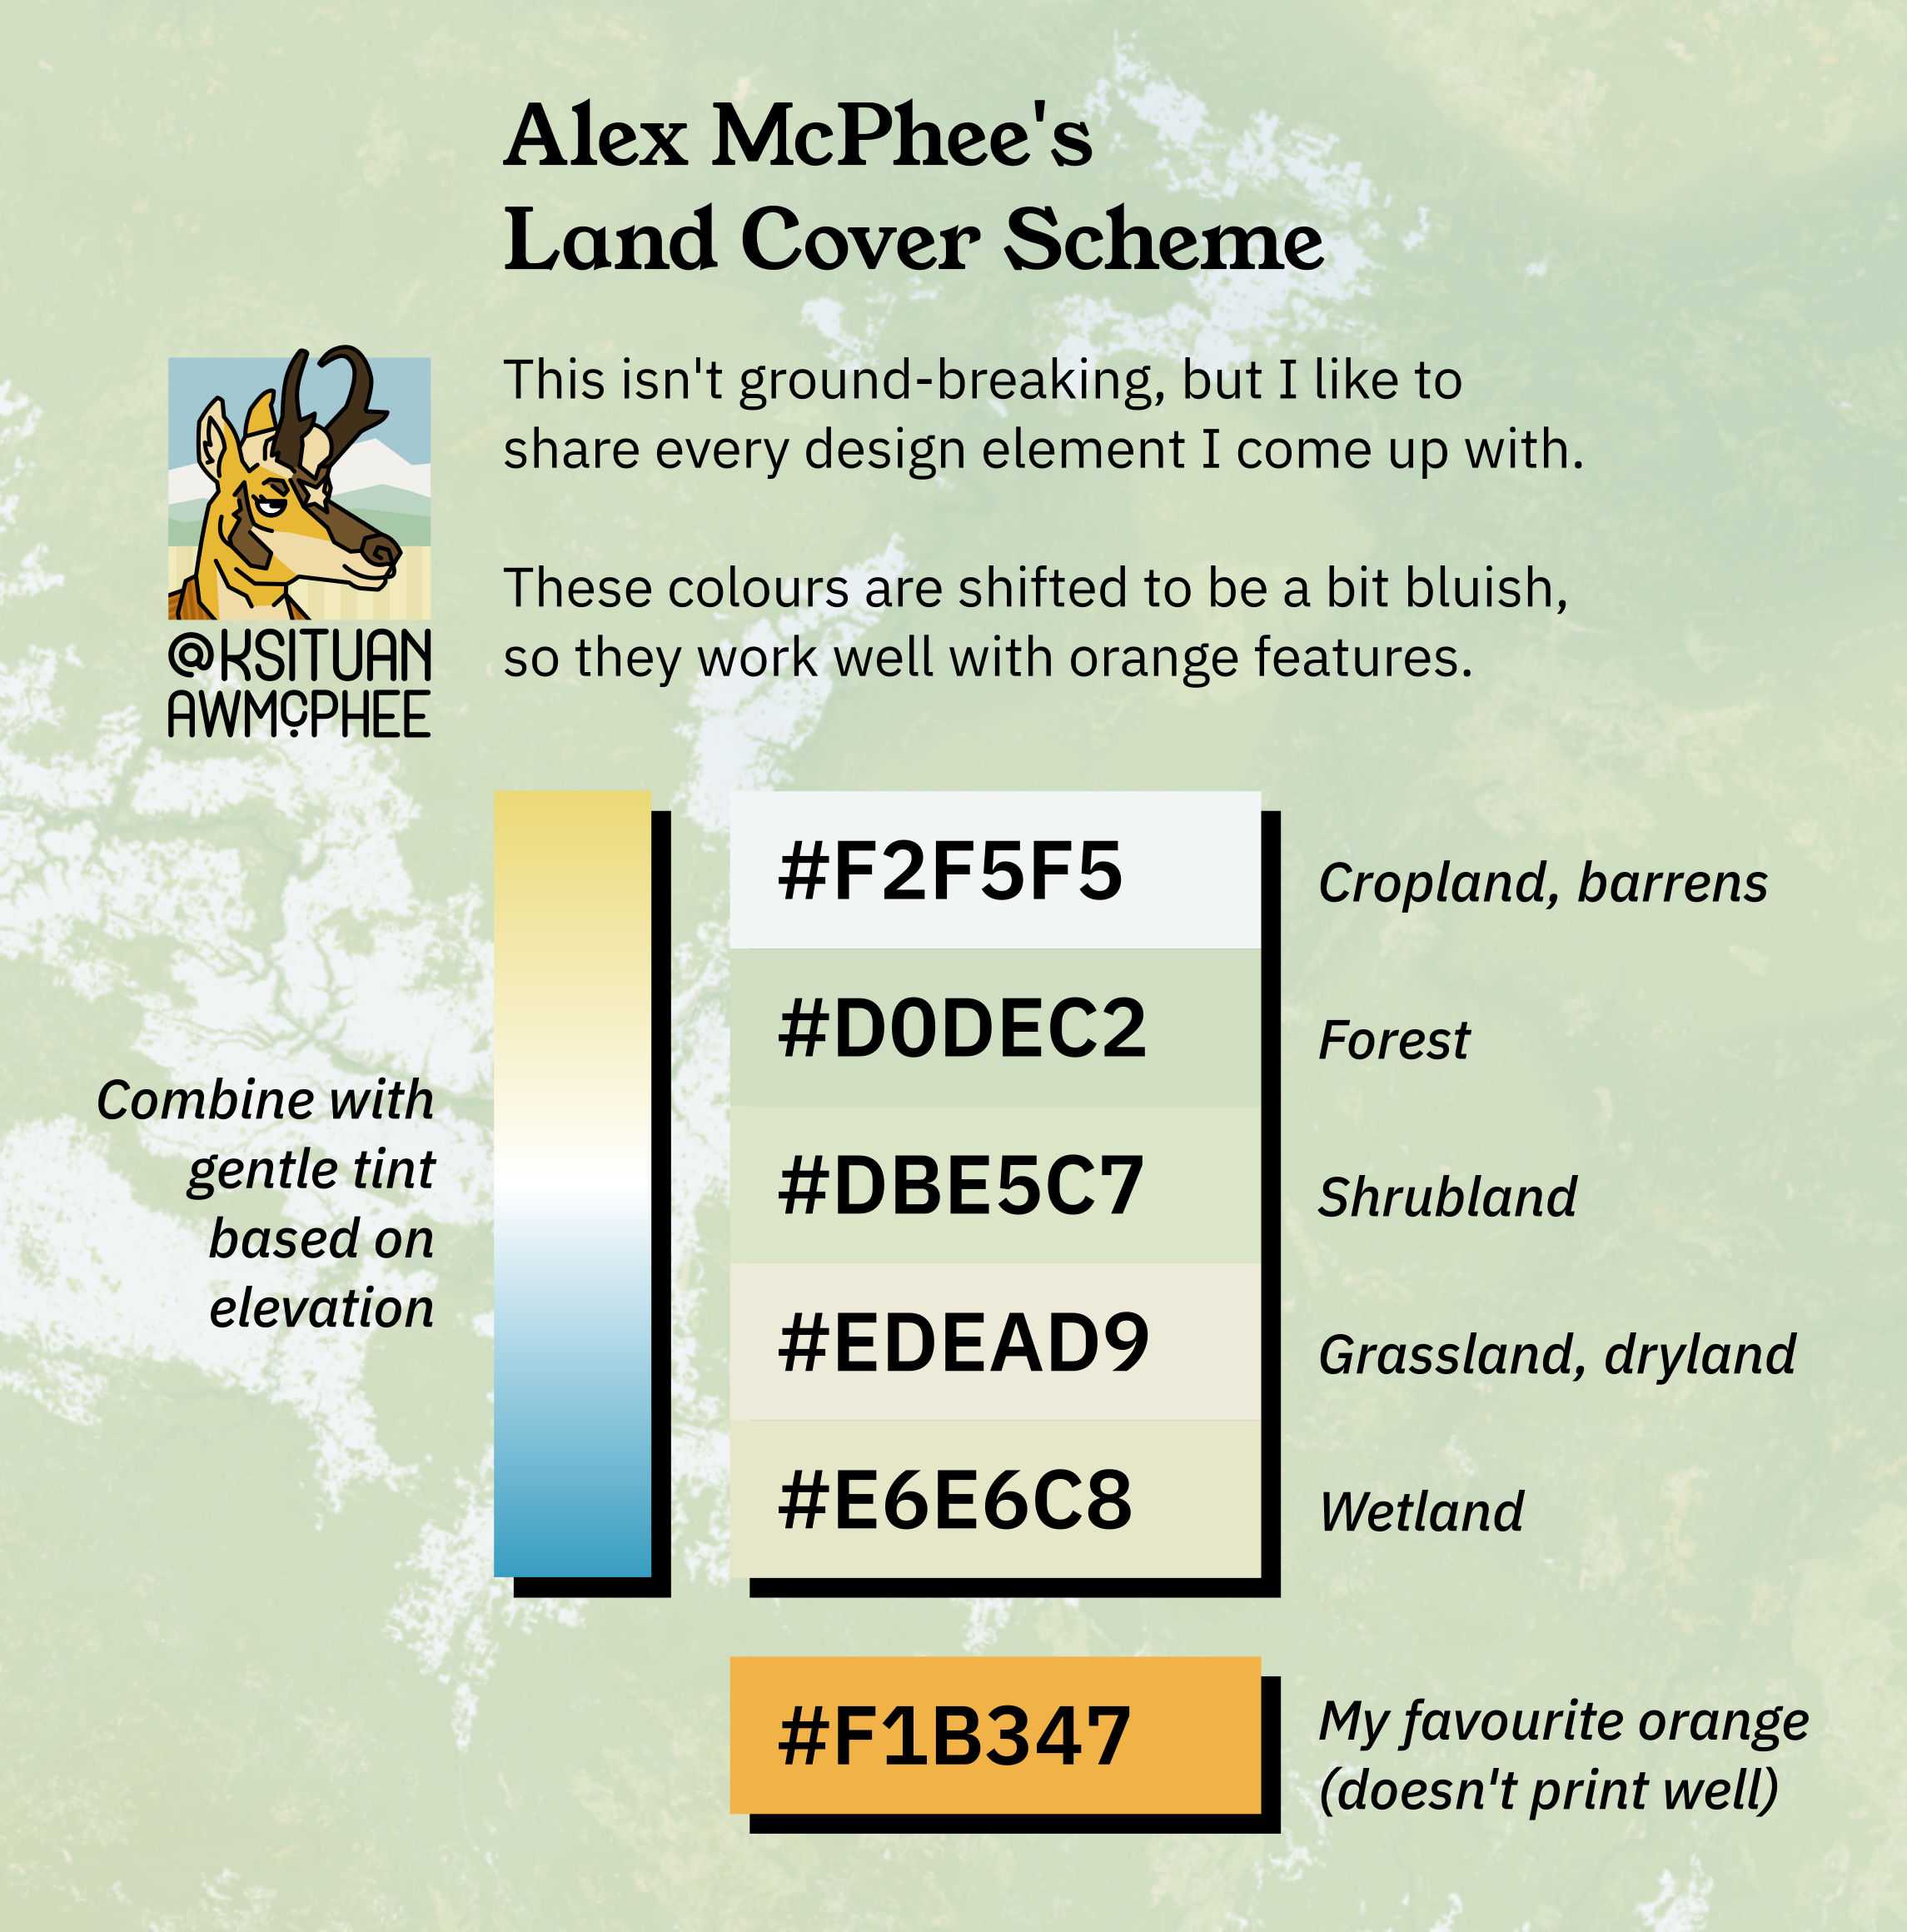 A diagram of Alex's favourite land cover colour scheme.